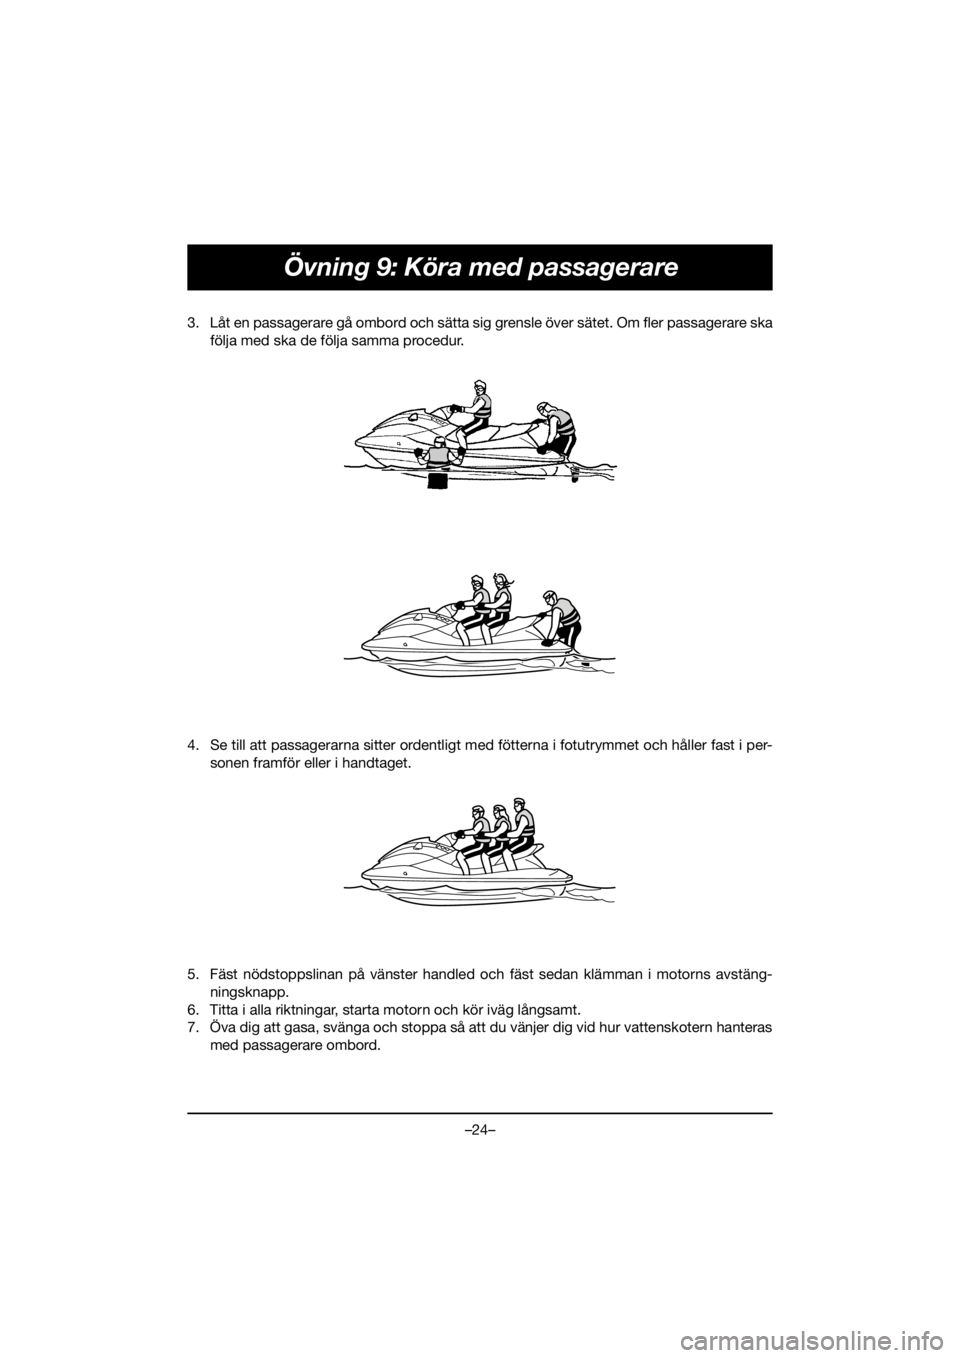 YAMAHA VX DELUXE 2021  Manuale de Empleo (in Spanish) –24–
Övning 9: Köra med passagerare
3. Låt en passagerare gå ombord och sätta sig grensle över sätet. Om fler passagerare ska
följa med ska de följa samma procedur. 
4. Se till att passag